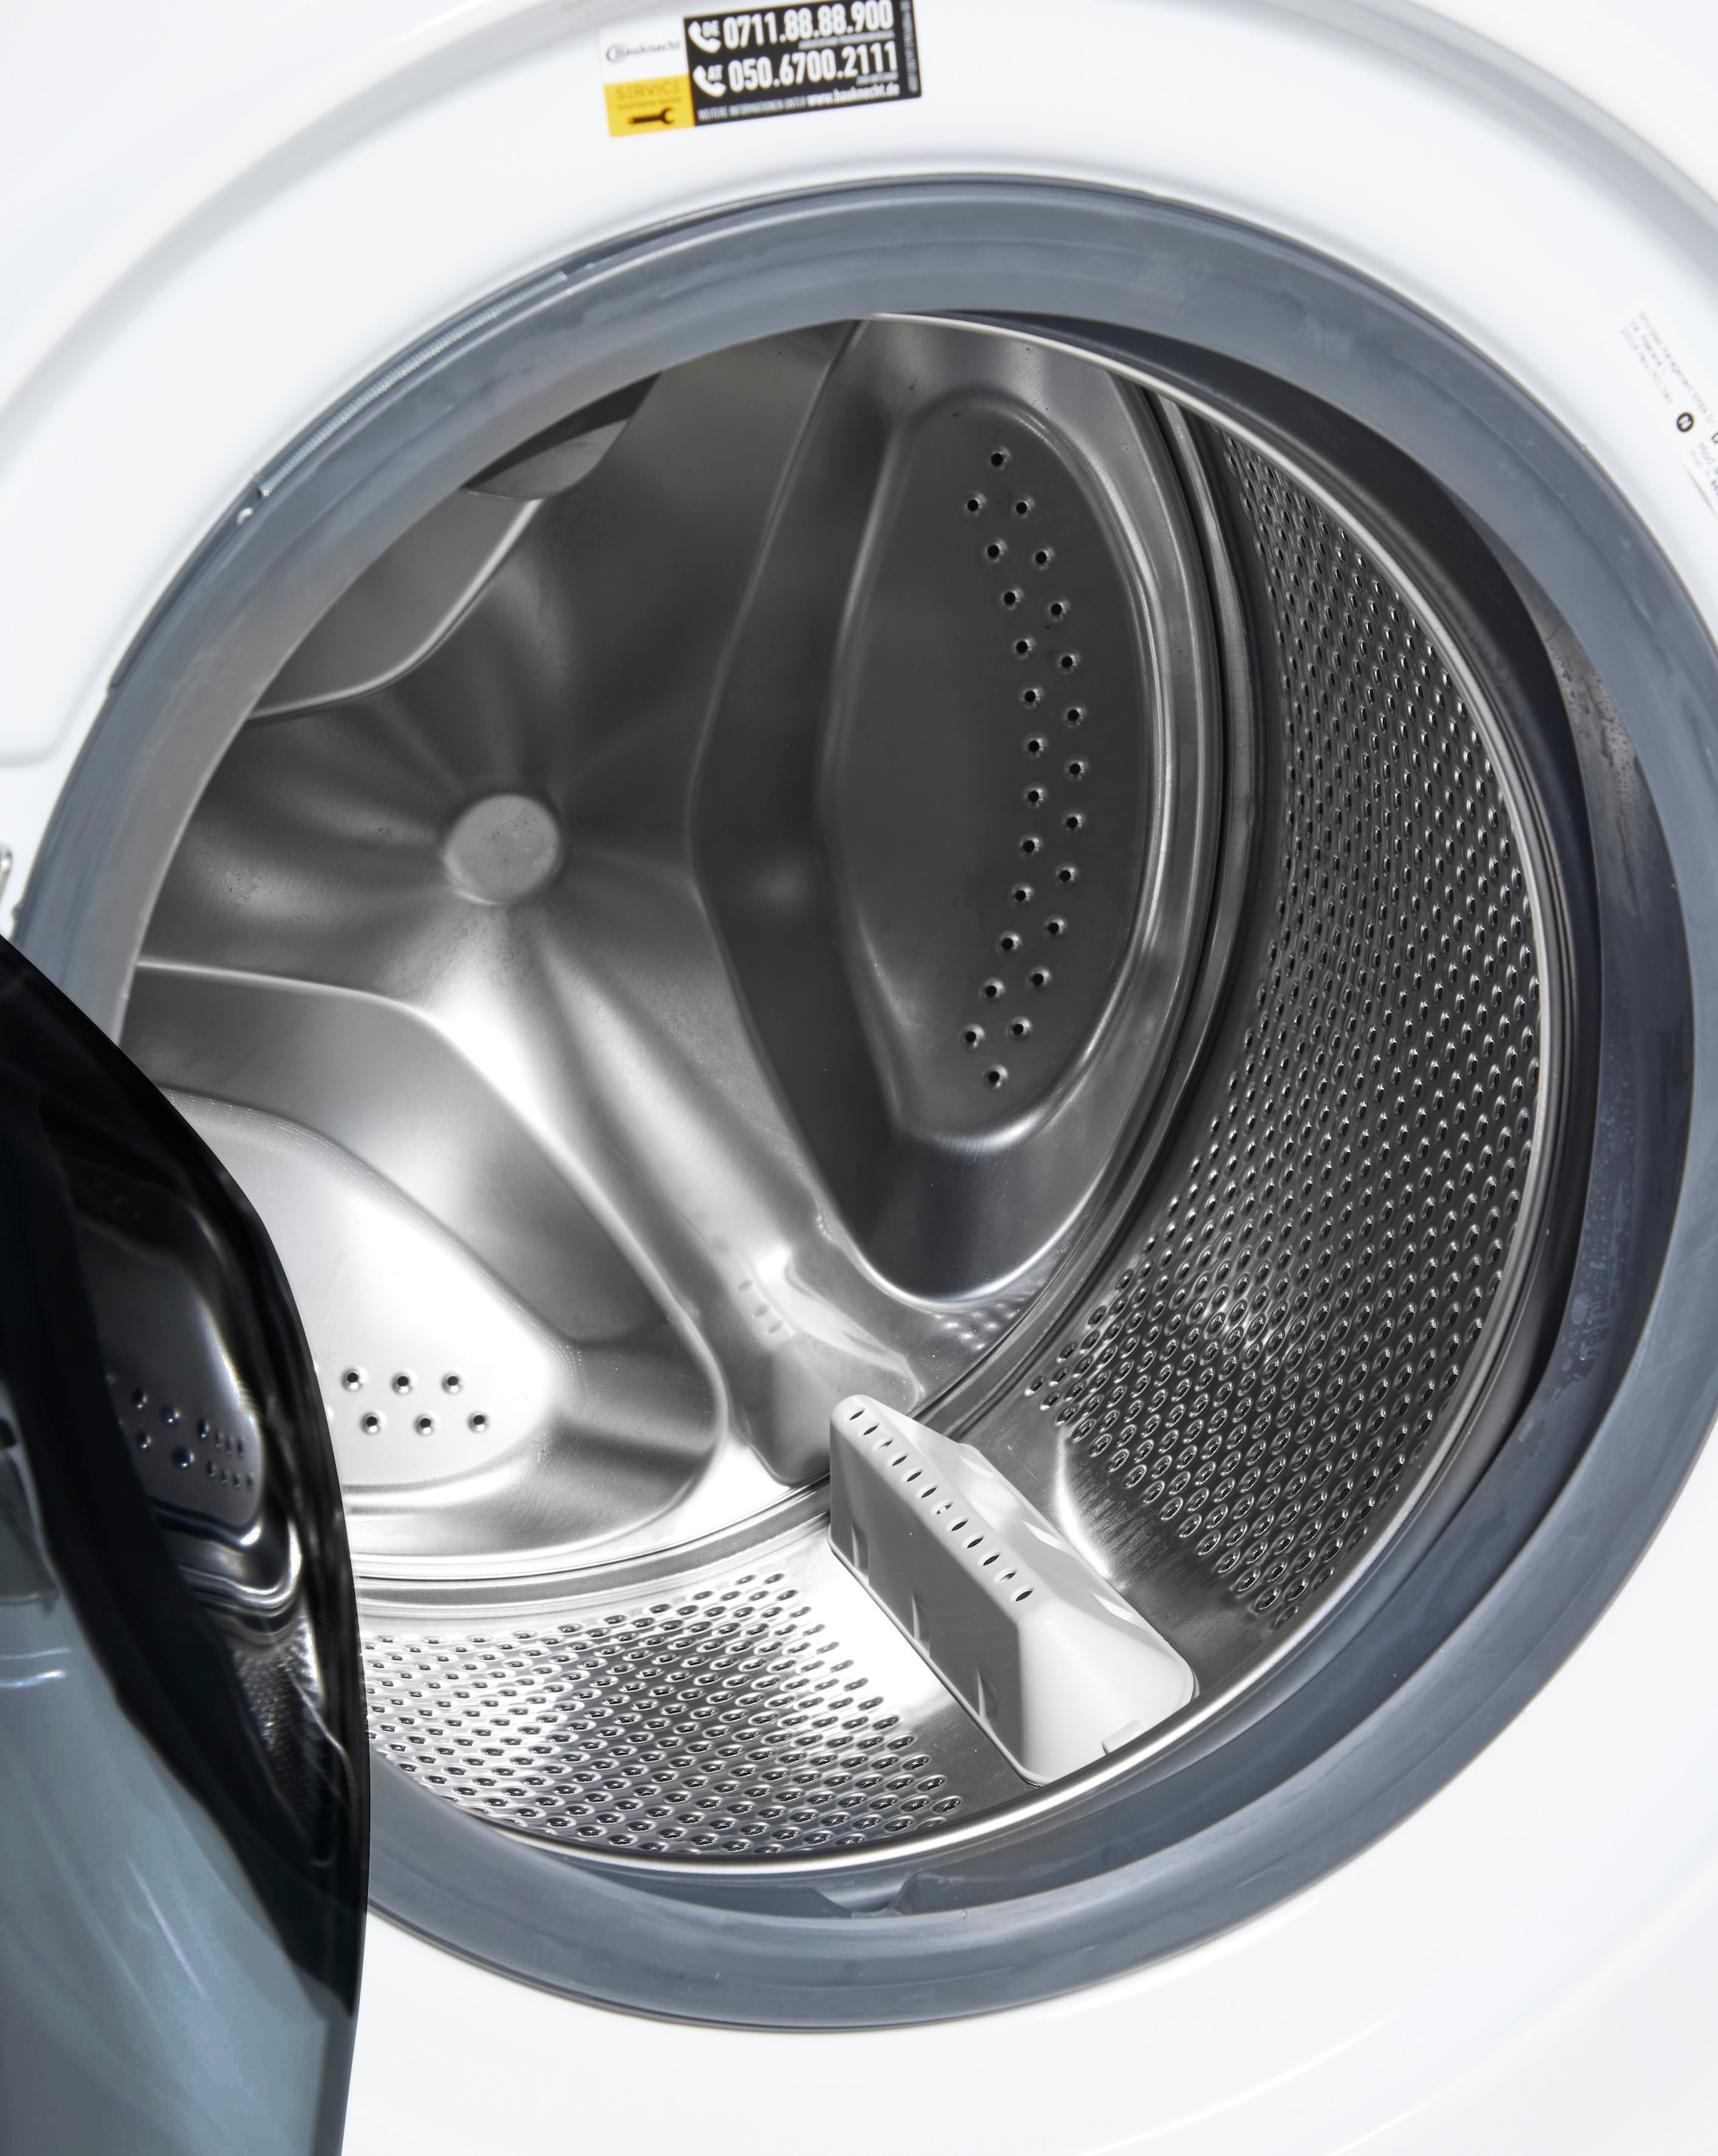 BAUKNECHT Waschmaschine »Super Eco 9464 A«, Super Eco 9464 A, 9 kg, 1400 U/min, 4 Jahre Herstellergarantie